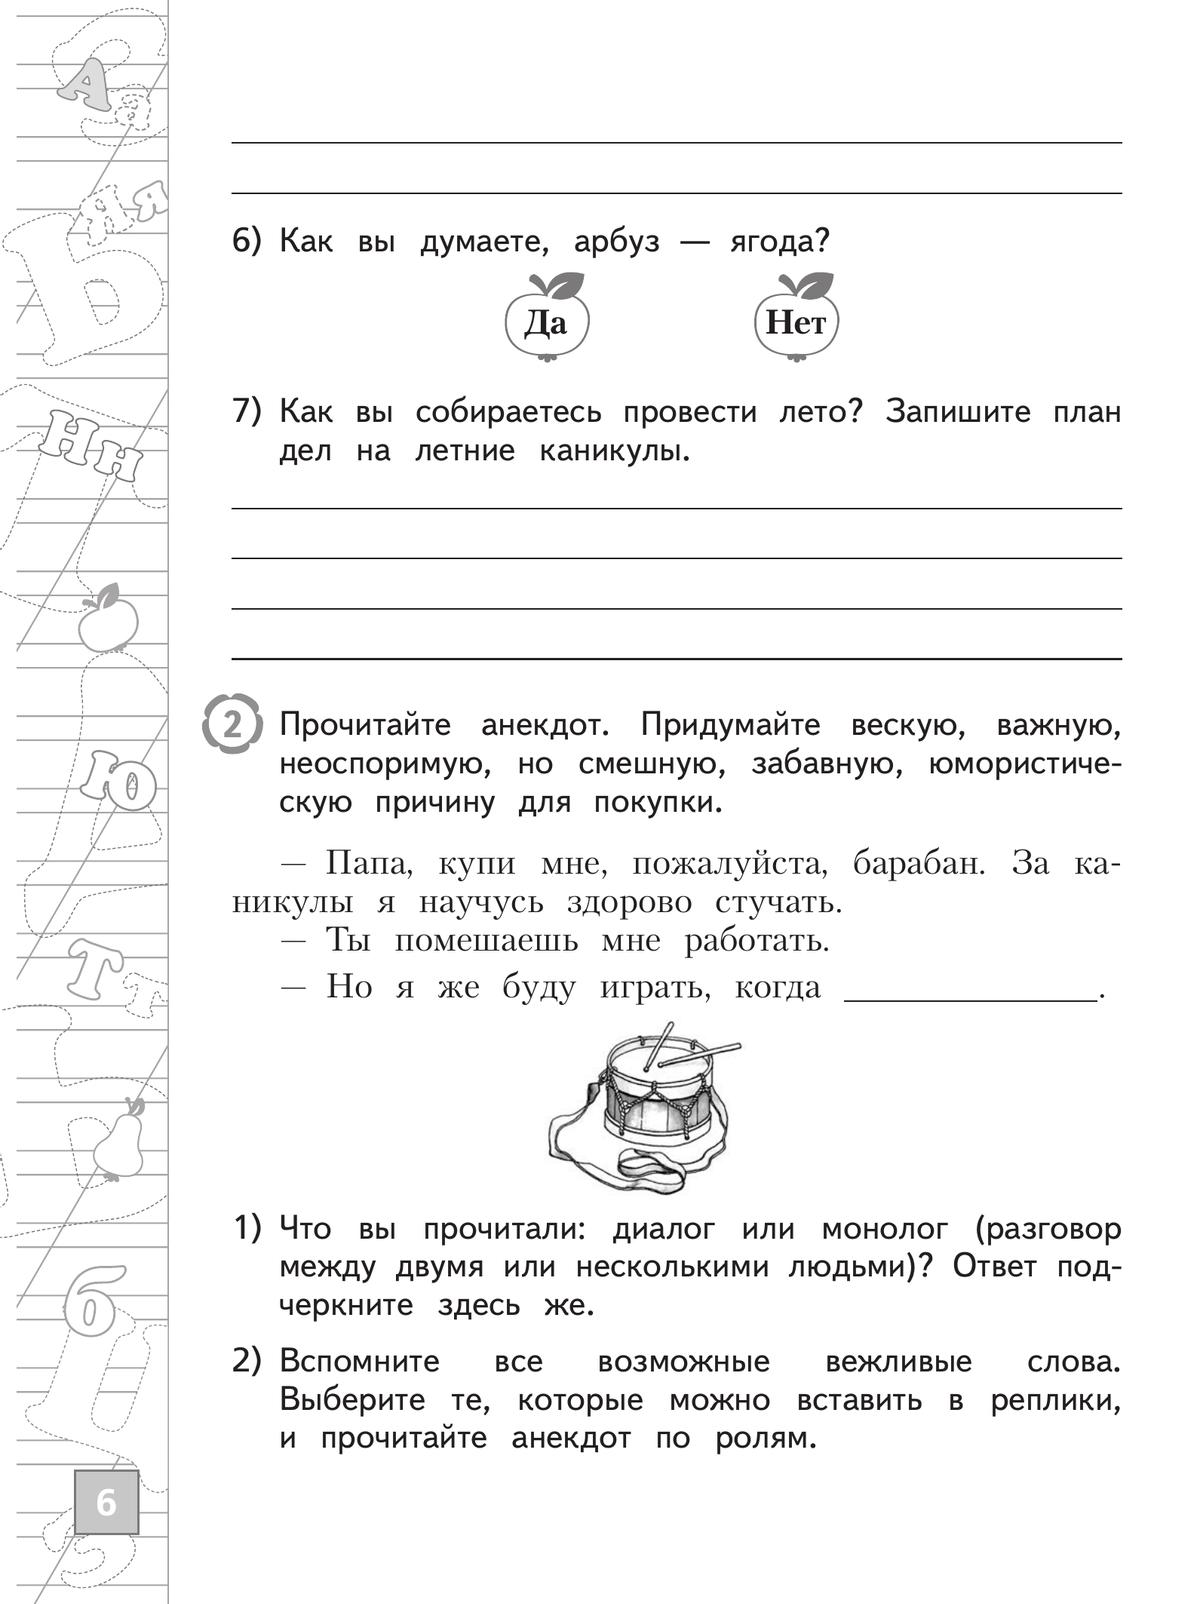 Русский язык. Тетрадь летних заданий. 2 класс 7